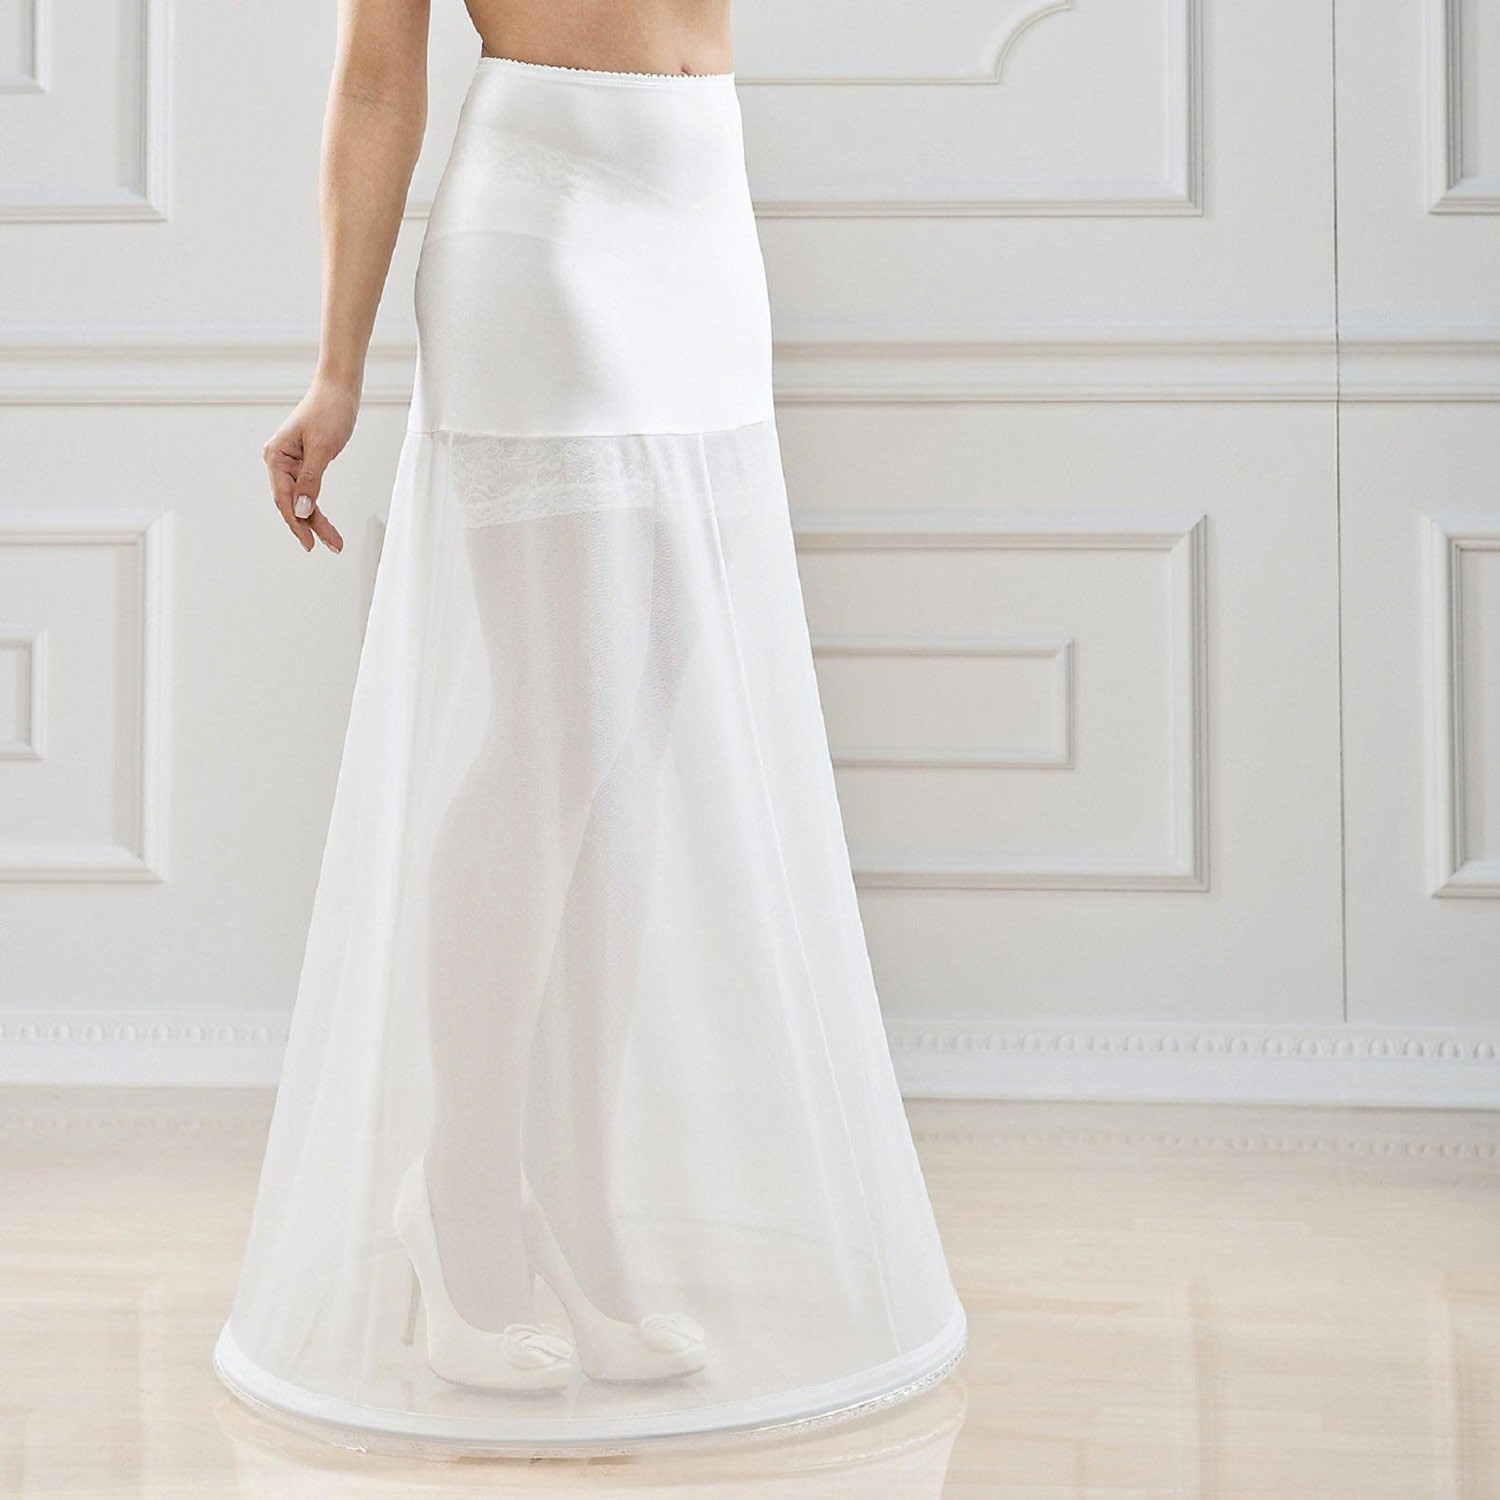 Lacey Bell Femme Jupon Maxi Elegante Elastique Taille pour Robe de Mariee P2-190